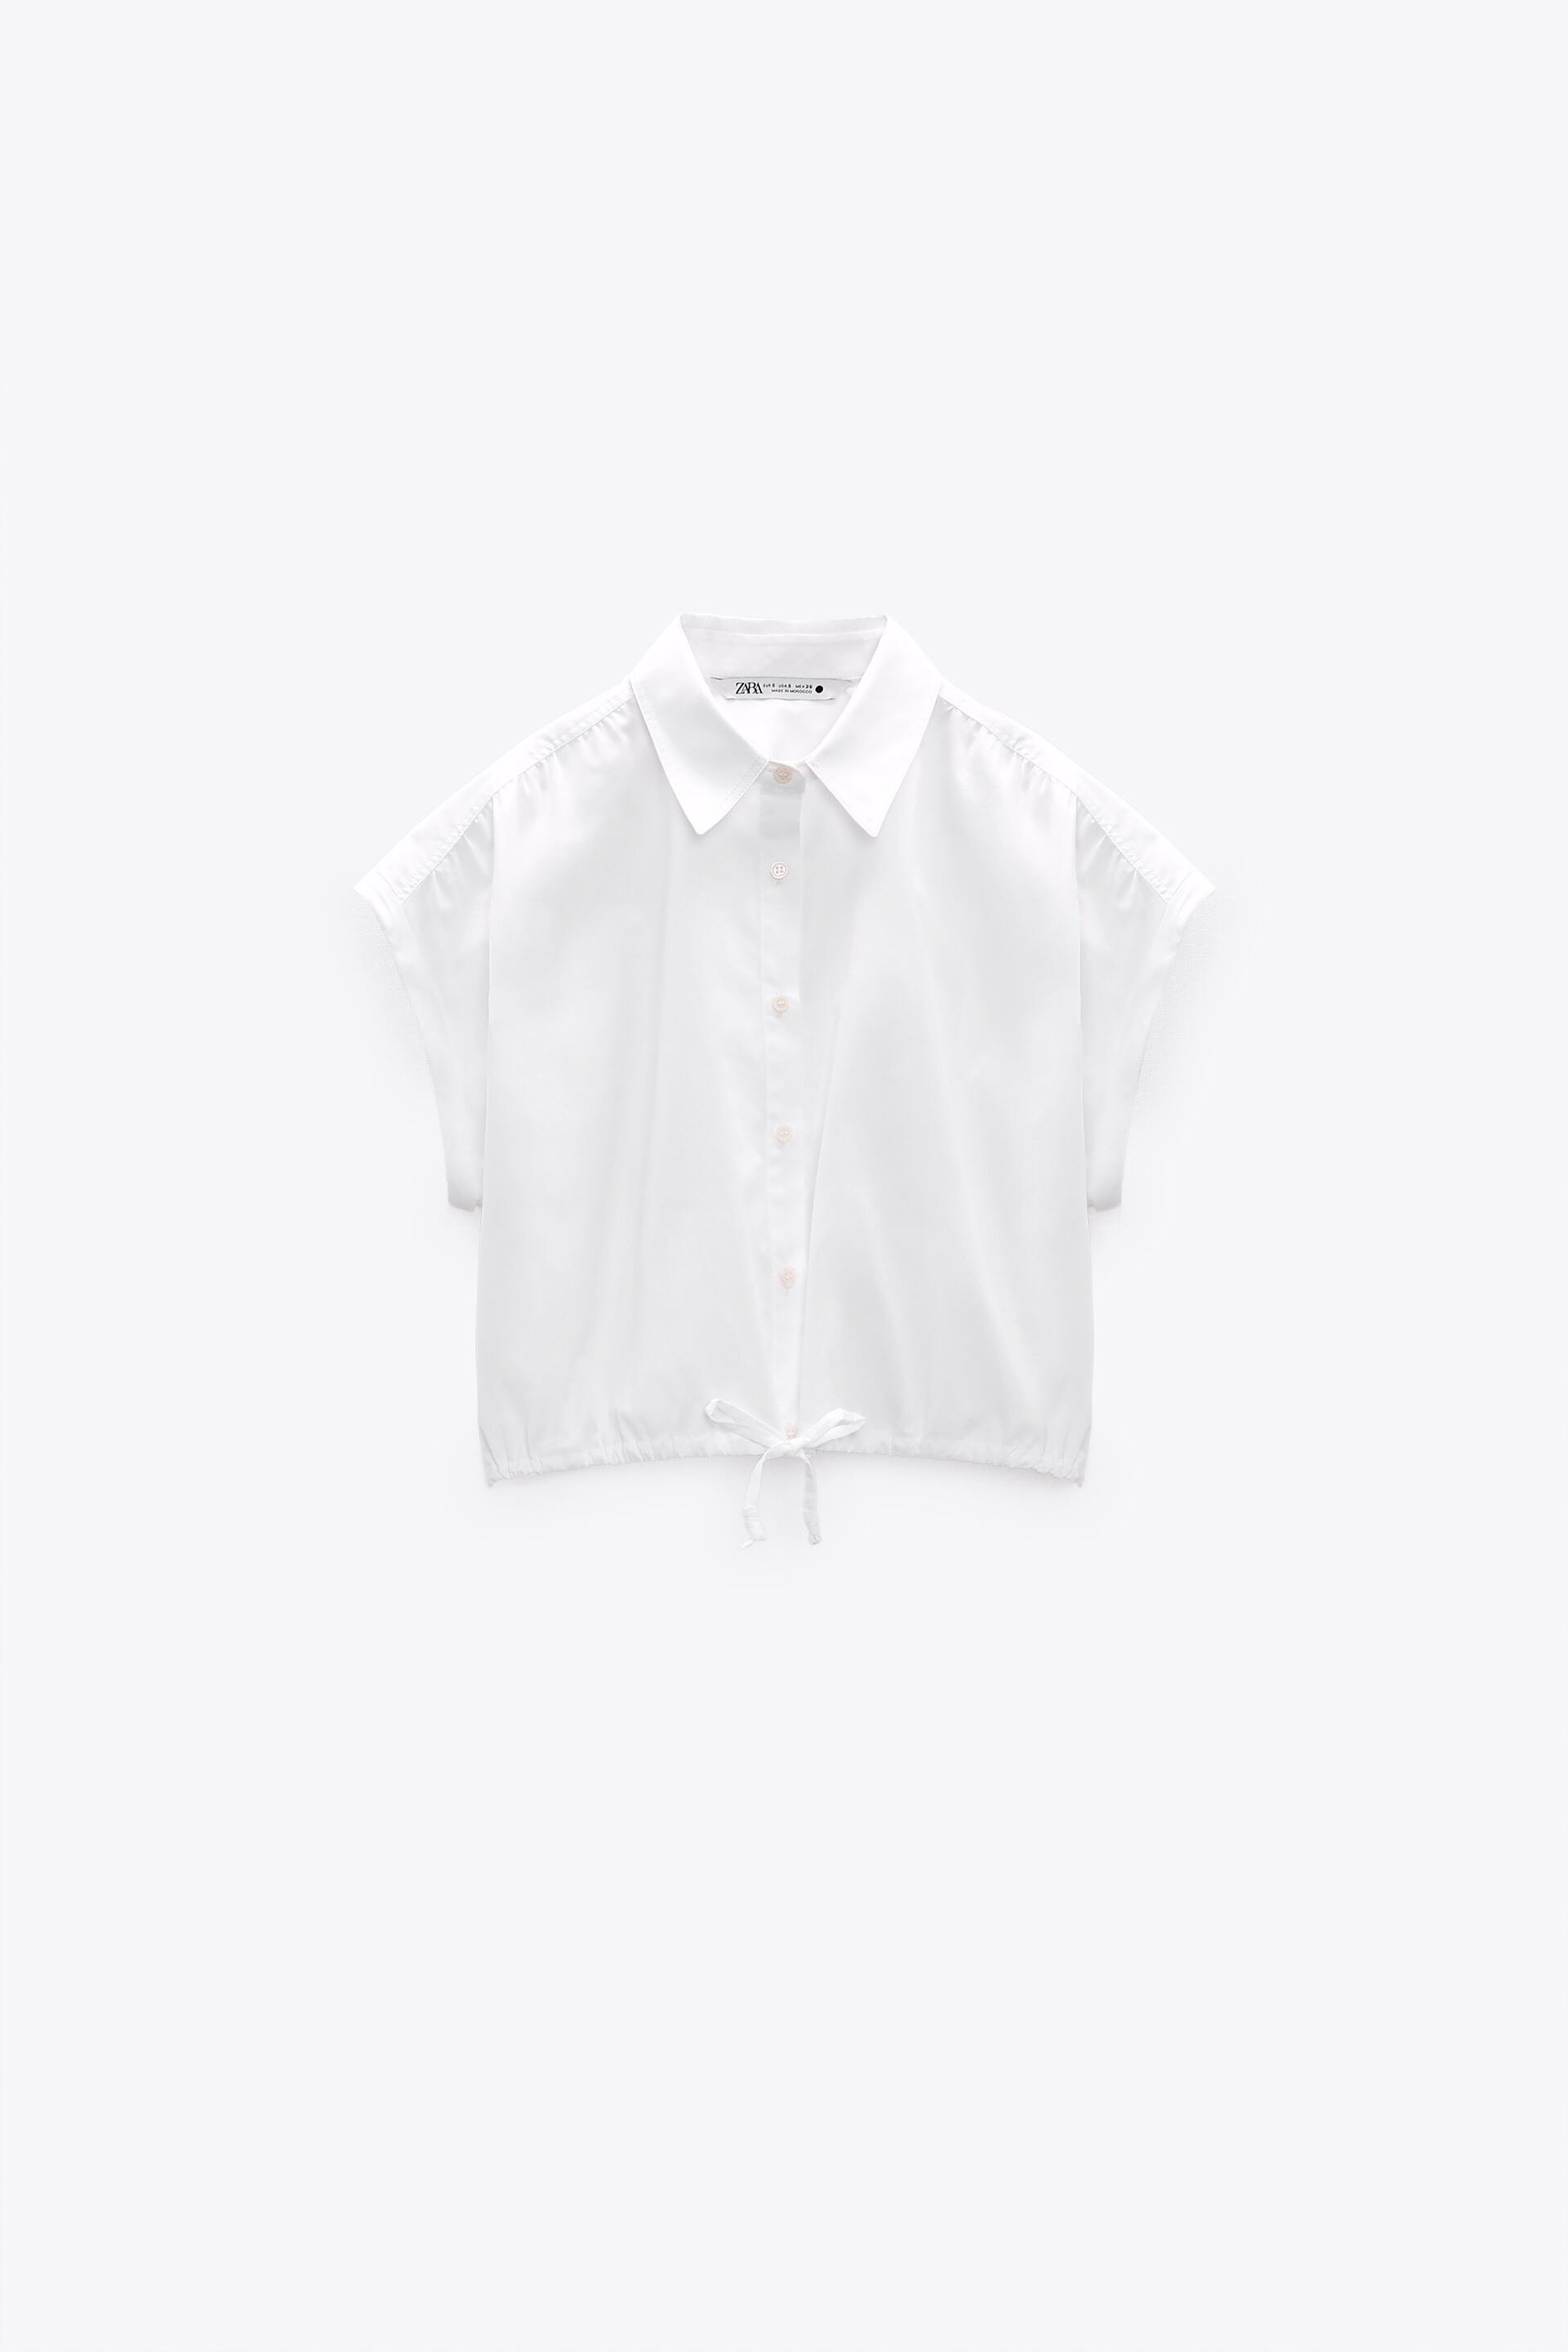 ZARA タイフロントシャツ ブラウスエクリュオフホワイト 116 半袖トップス トップス(その他) | 925panda.co.il